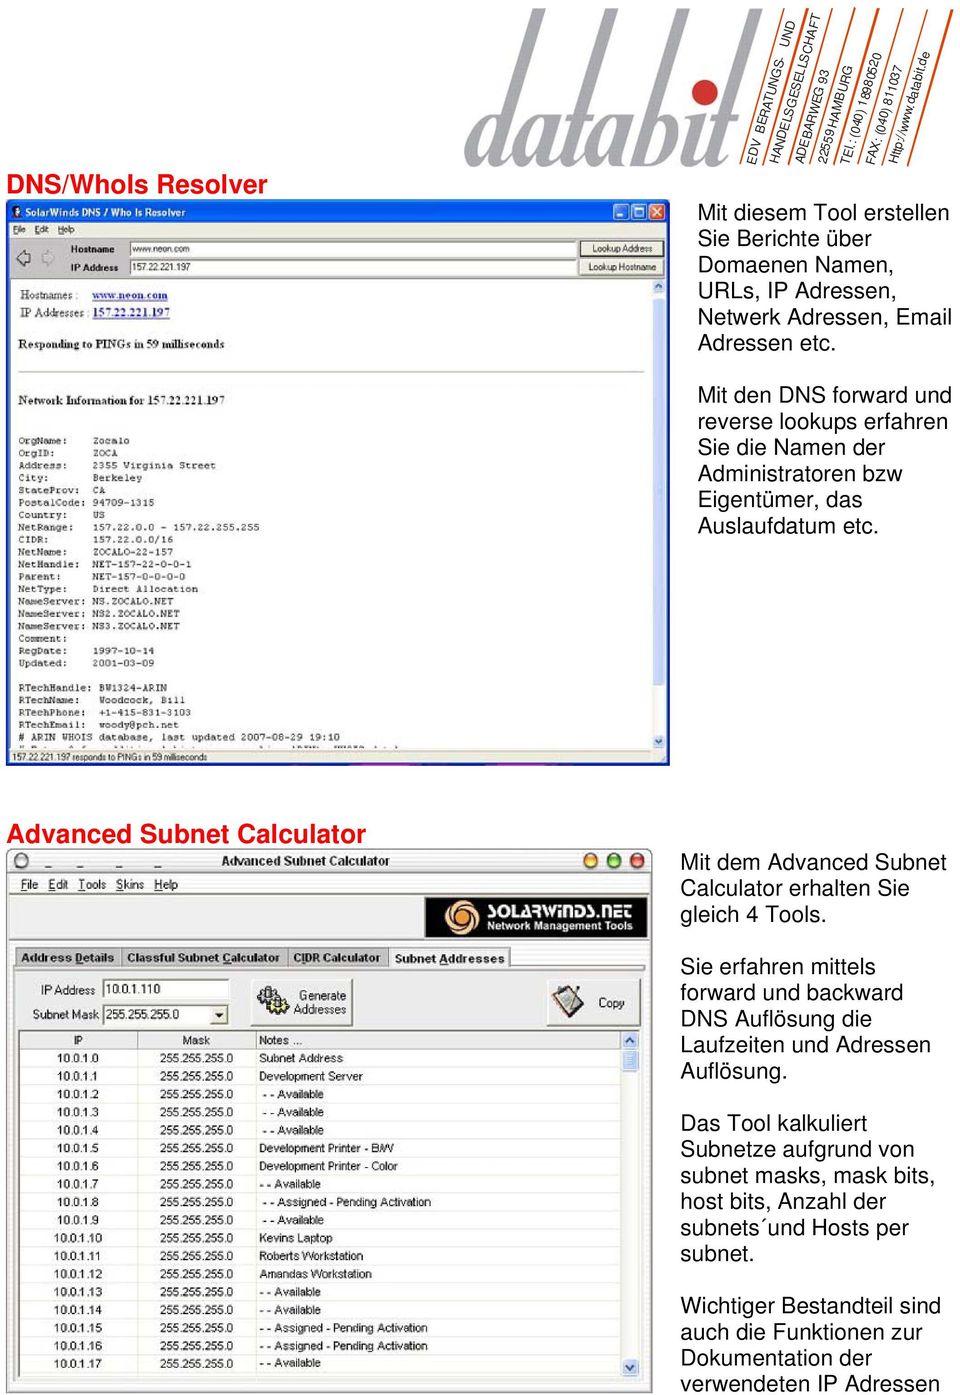 Advanced Subnet Calculator Mit dem Advanced Subnet Calculator erhalten Sie gleich 4 Tools.